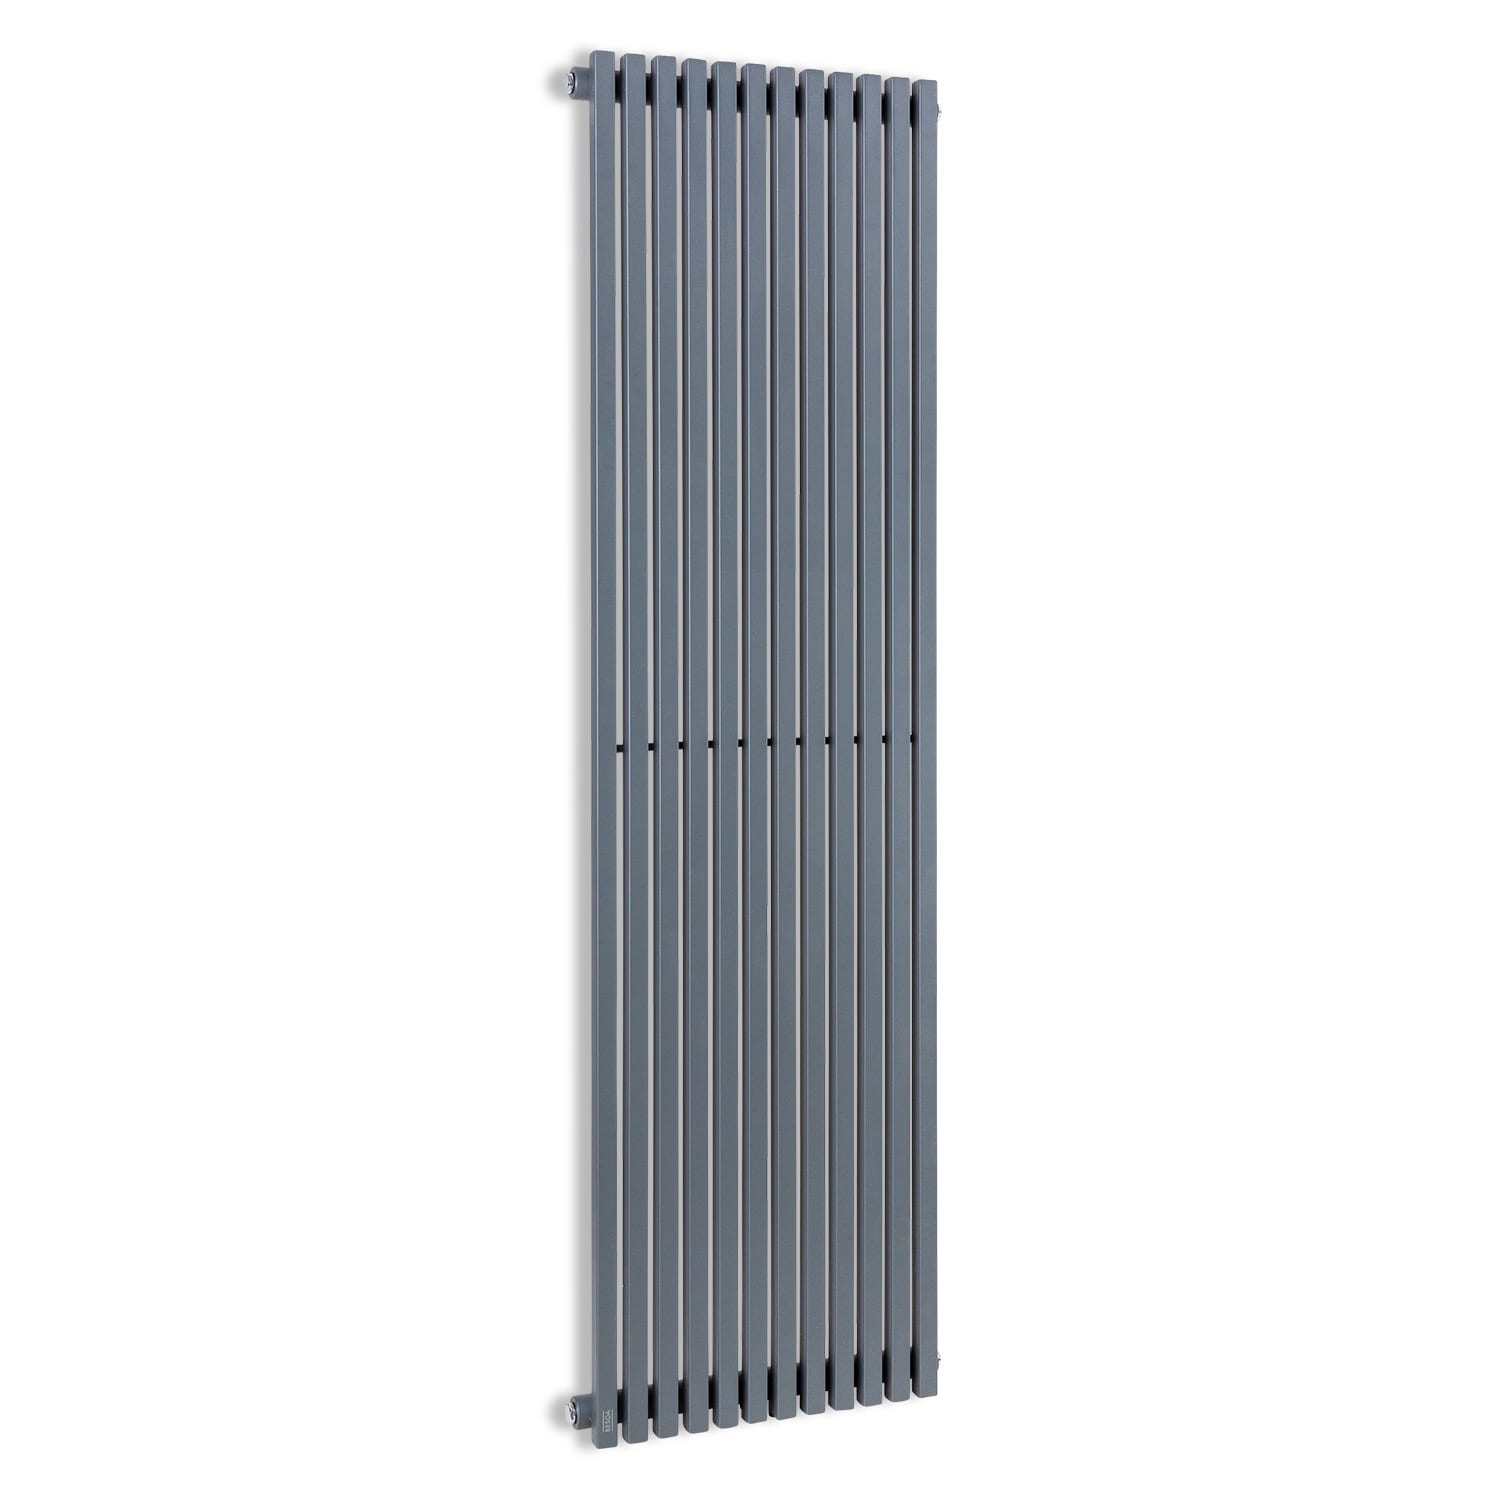 Levně Besoa Delgado, radiátor, 160 x 45 cm, 822 W, teplovodní, 1/2", 8-20 m2, šedý